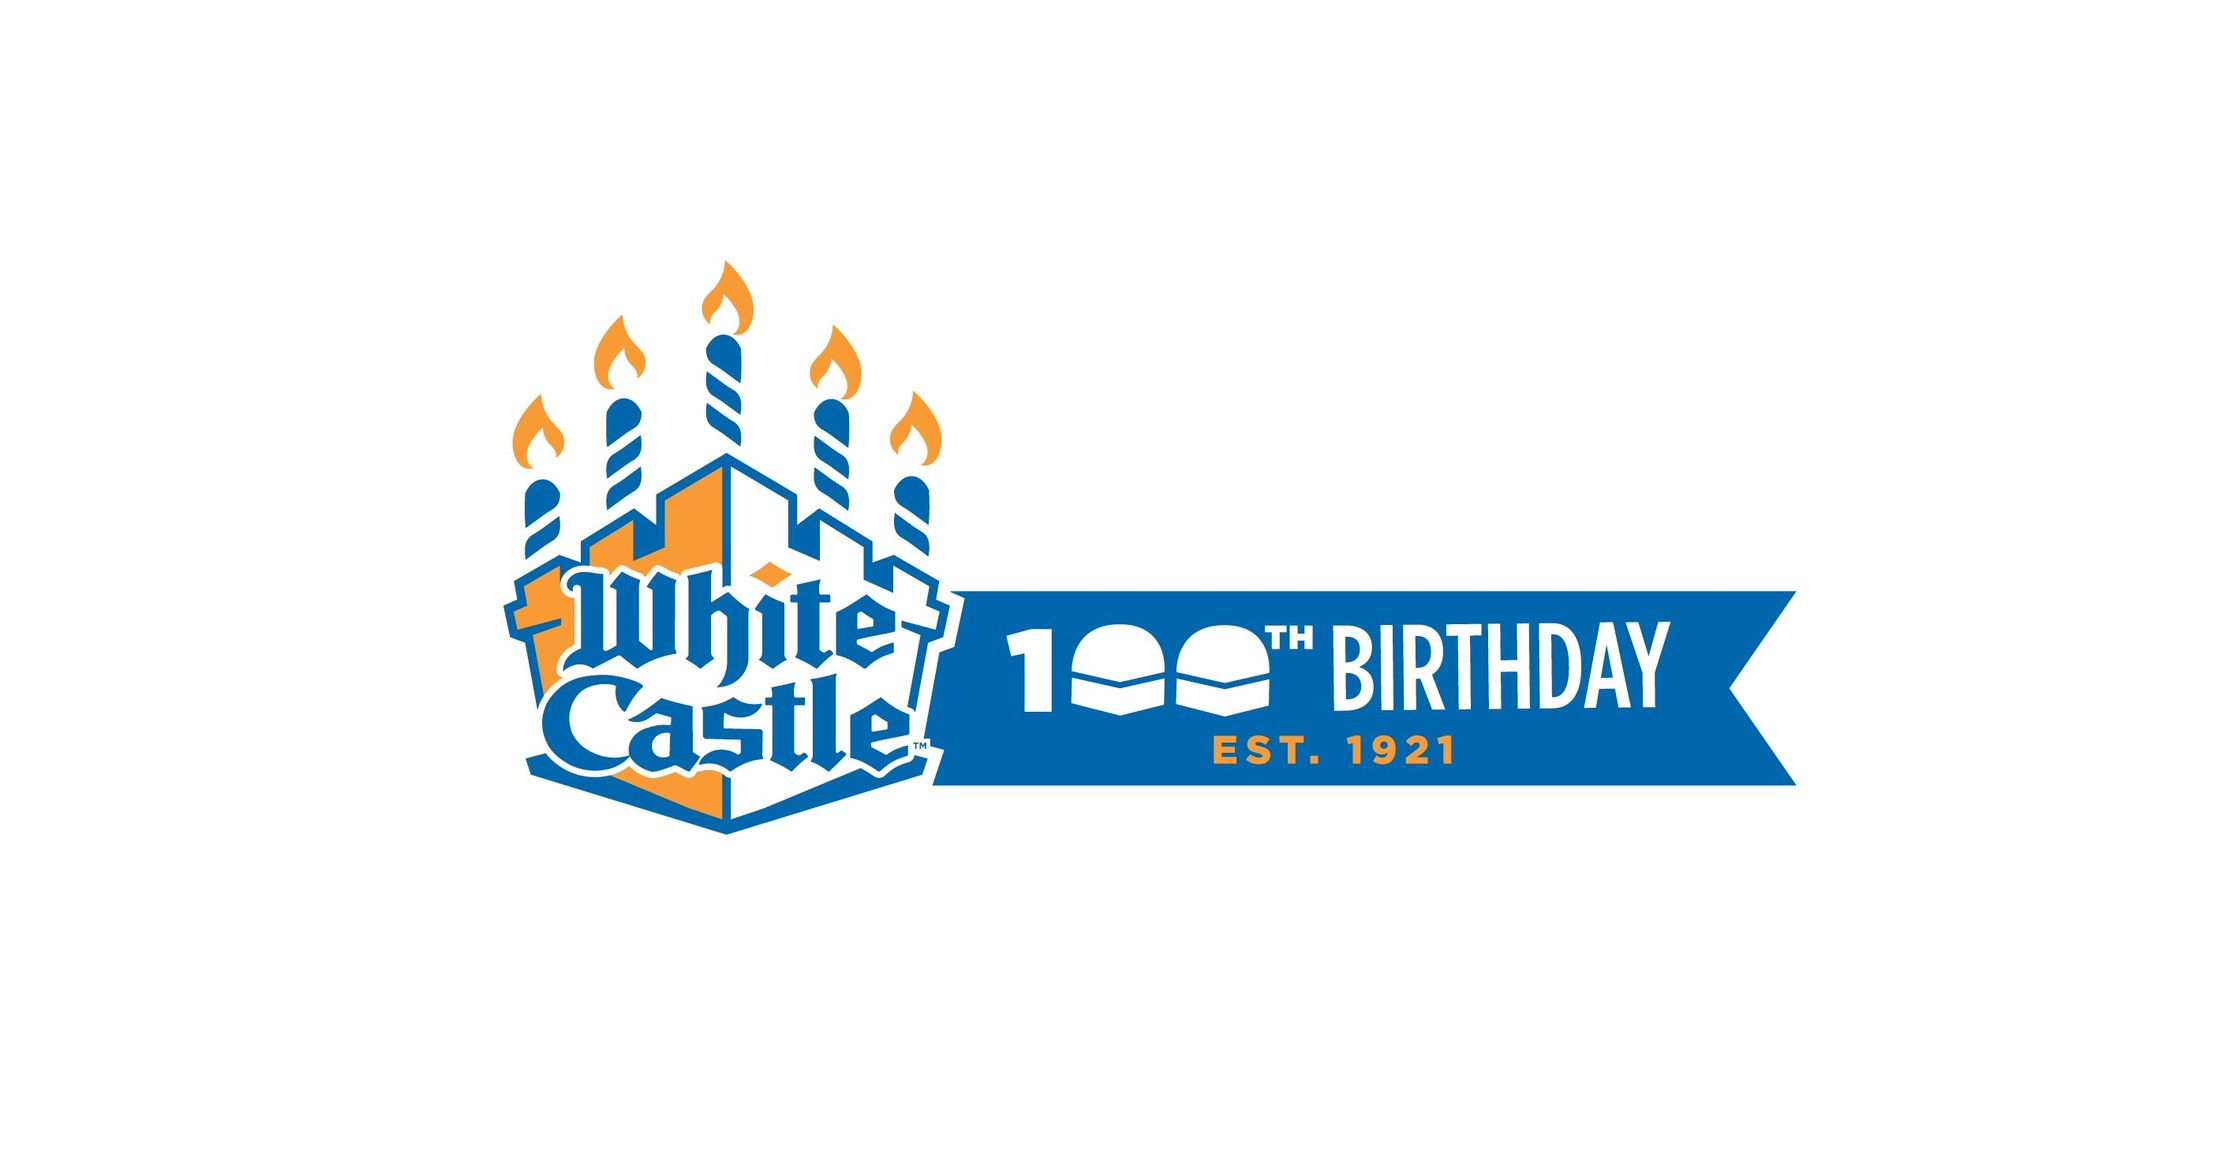 2020 White Castle Mug 100th Birthday edition1921-2021~ color changes NIB free sh 